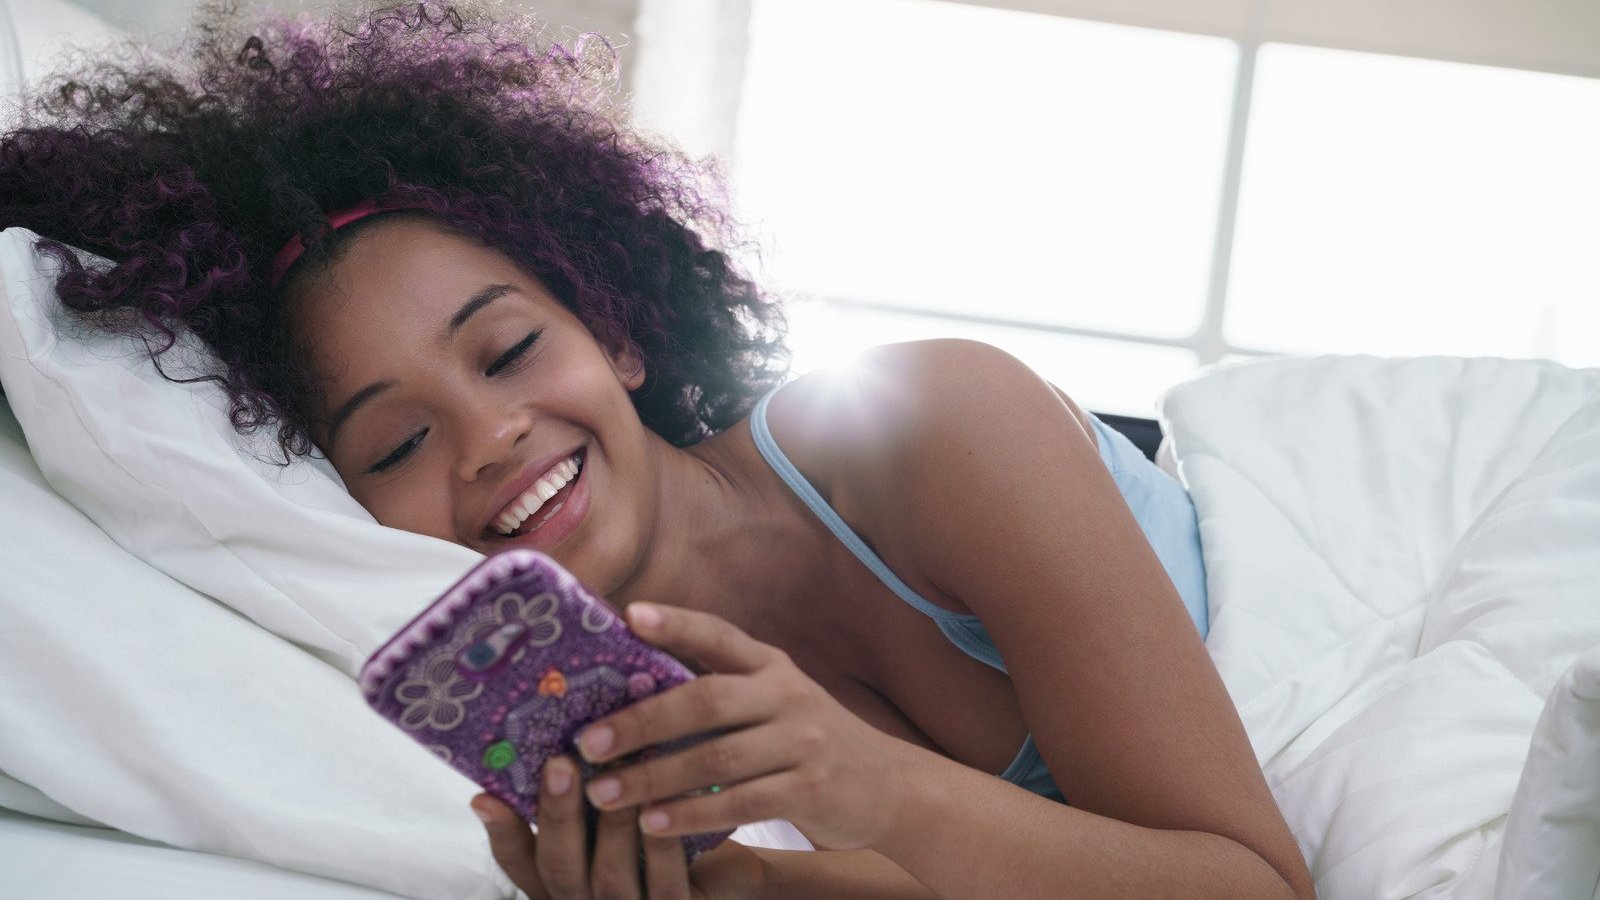 Mulher negra deitada numa cama, segurando um celular e com expressão risonha.